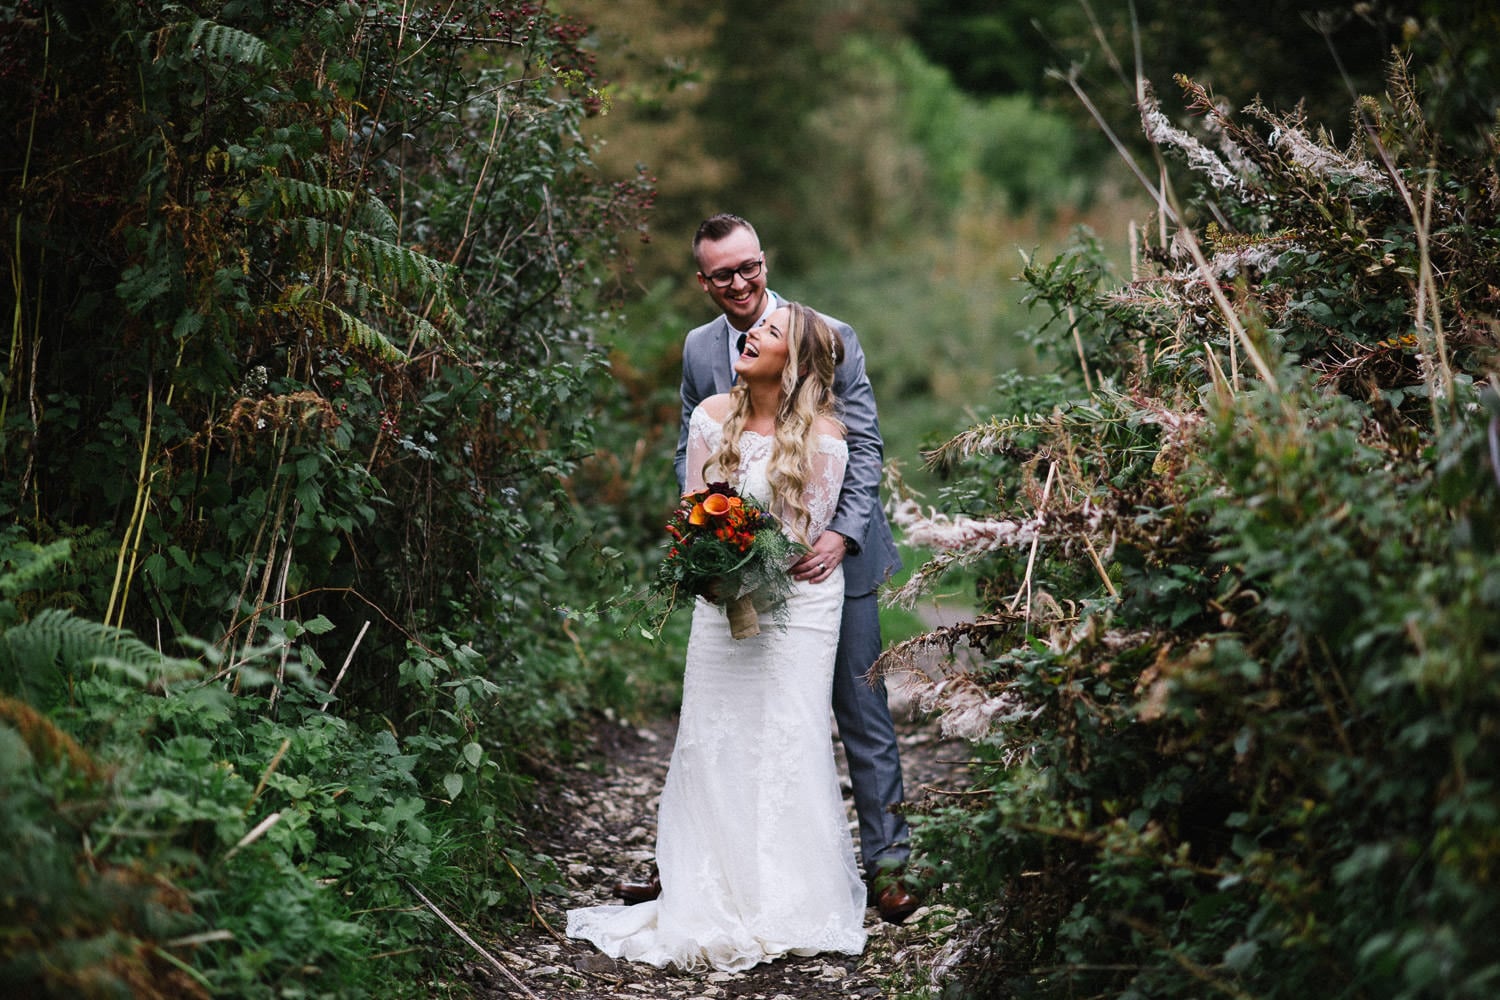 Wedding Photographers Belfast Northern Ireland| Wedding Photography NI